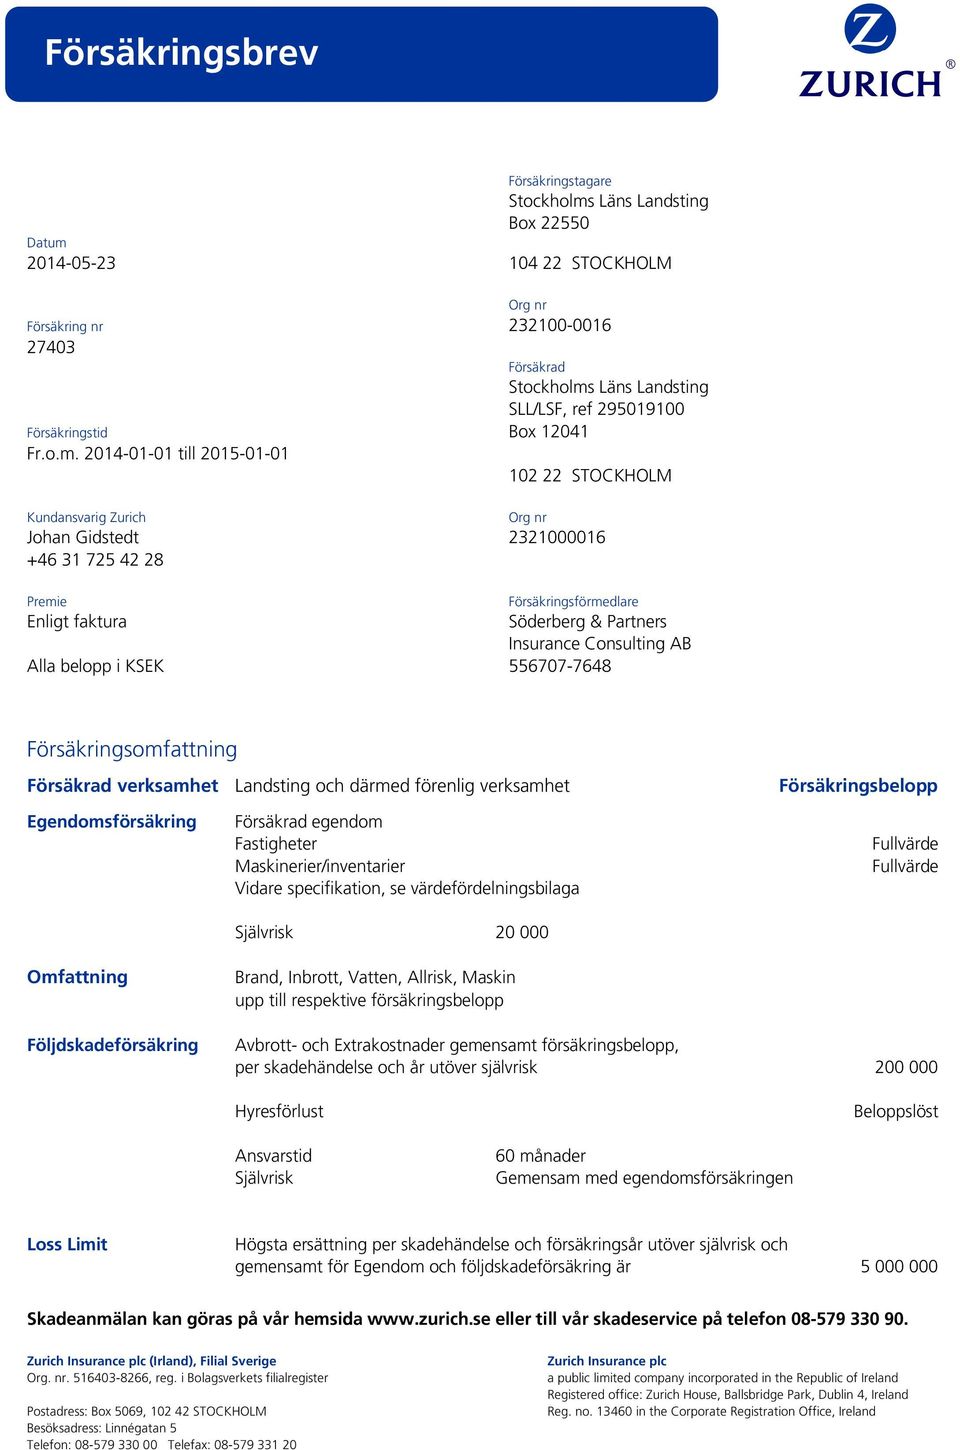 2014-01-01 till 2015-01-01 102 22 STOCKHOLM Kundansvarig Zurich Org nr Johan Gidstedt 2321000016 +46 31 725 42 28 Premie Försäkringsförmedlare Enligt faktura Söderberg & Partners Insurance Consulting